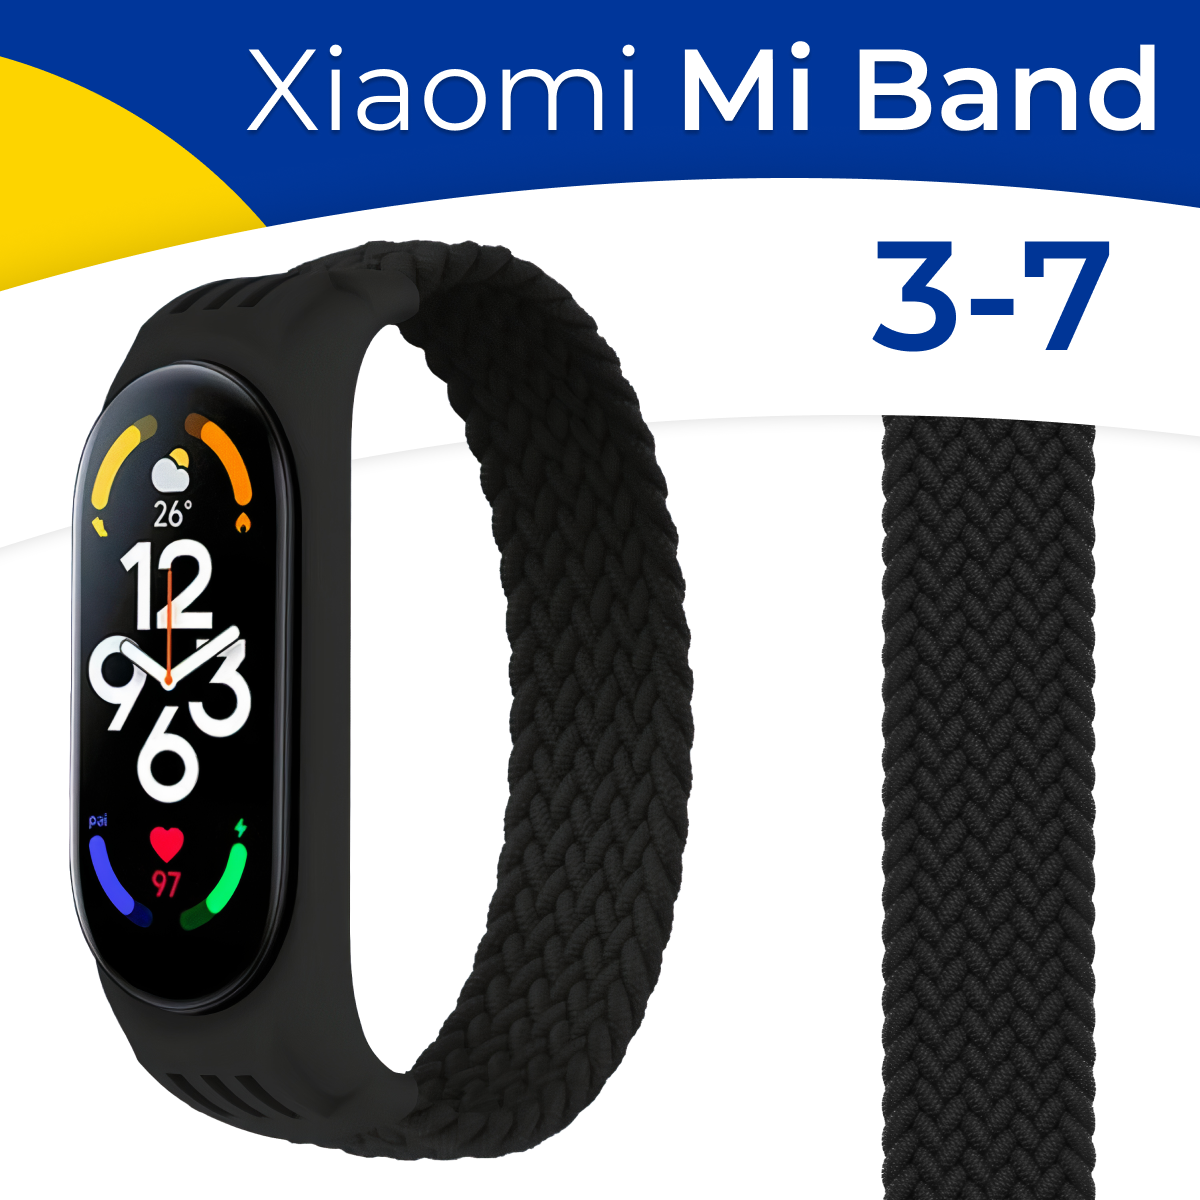 Нейлоновый ремешок для фитнес-трекера Xiaomi Mi Band 3, 4, 5, 6 и 7 / Плетеный тканевый монобраслет (15,5 см) на смарт часы Сяоми Ми Бэнд 3-7 / Черный